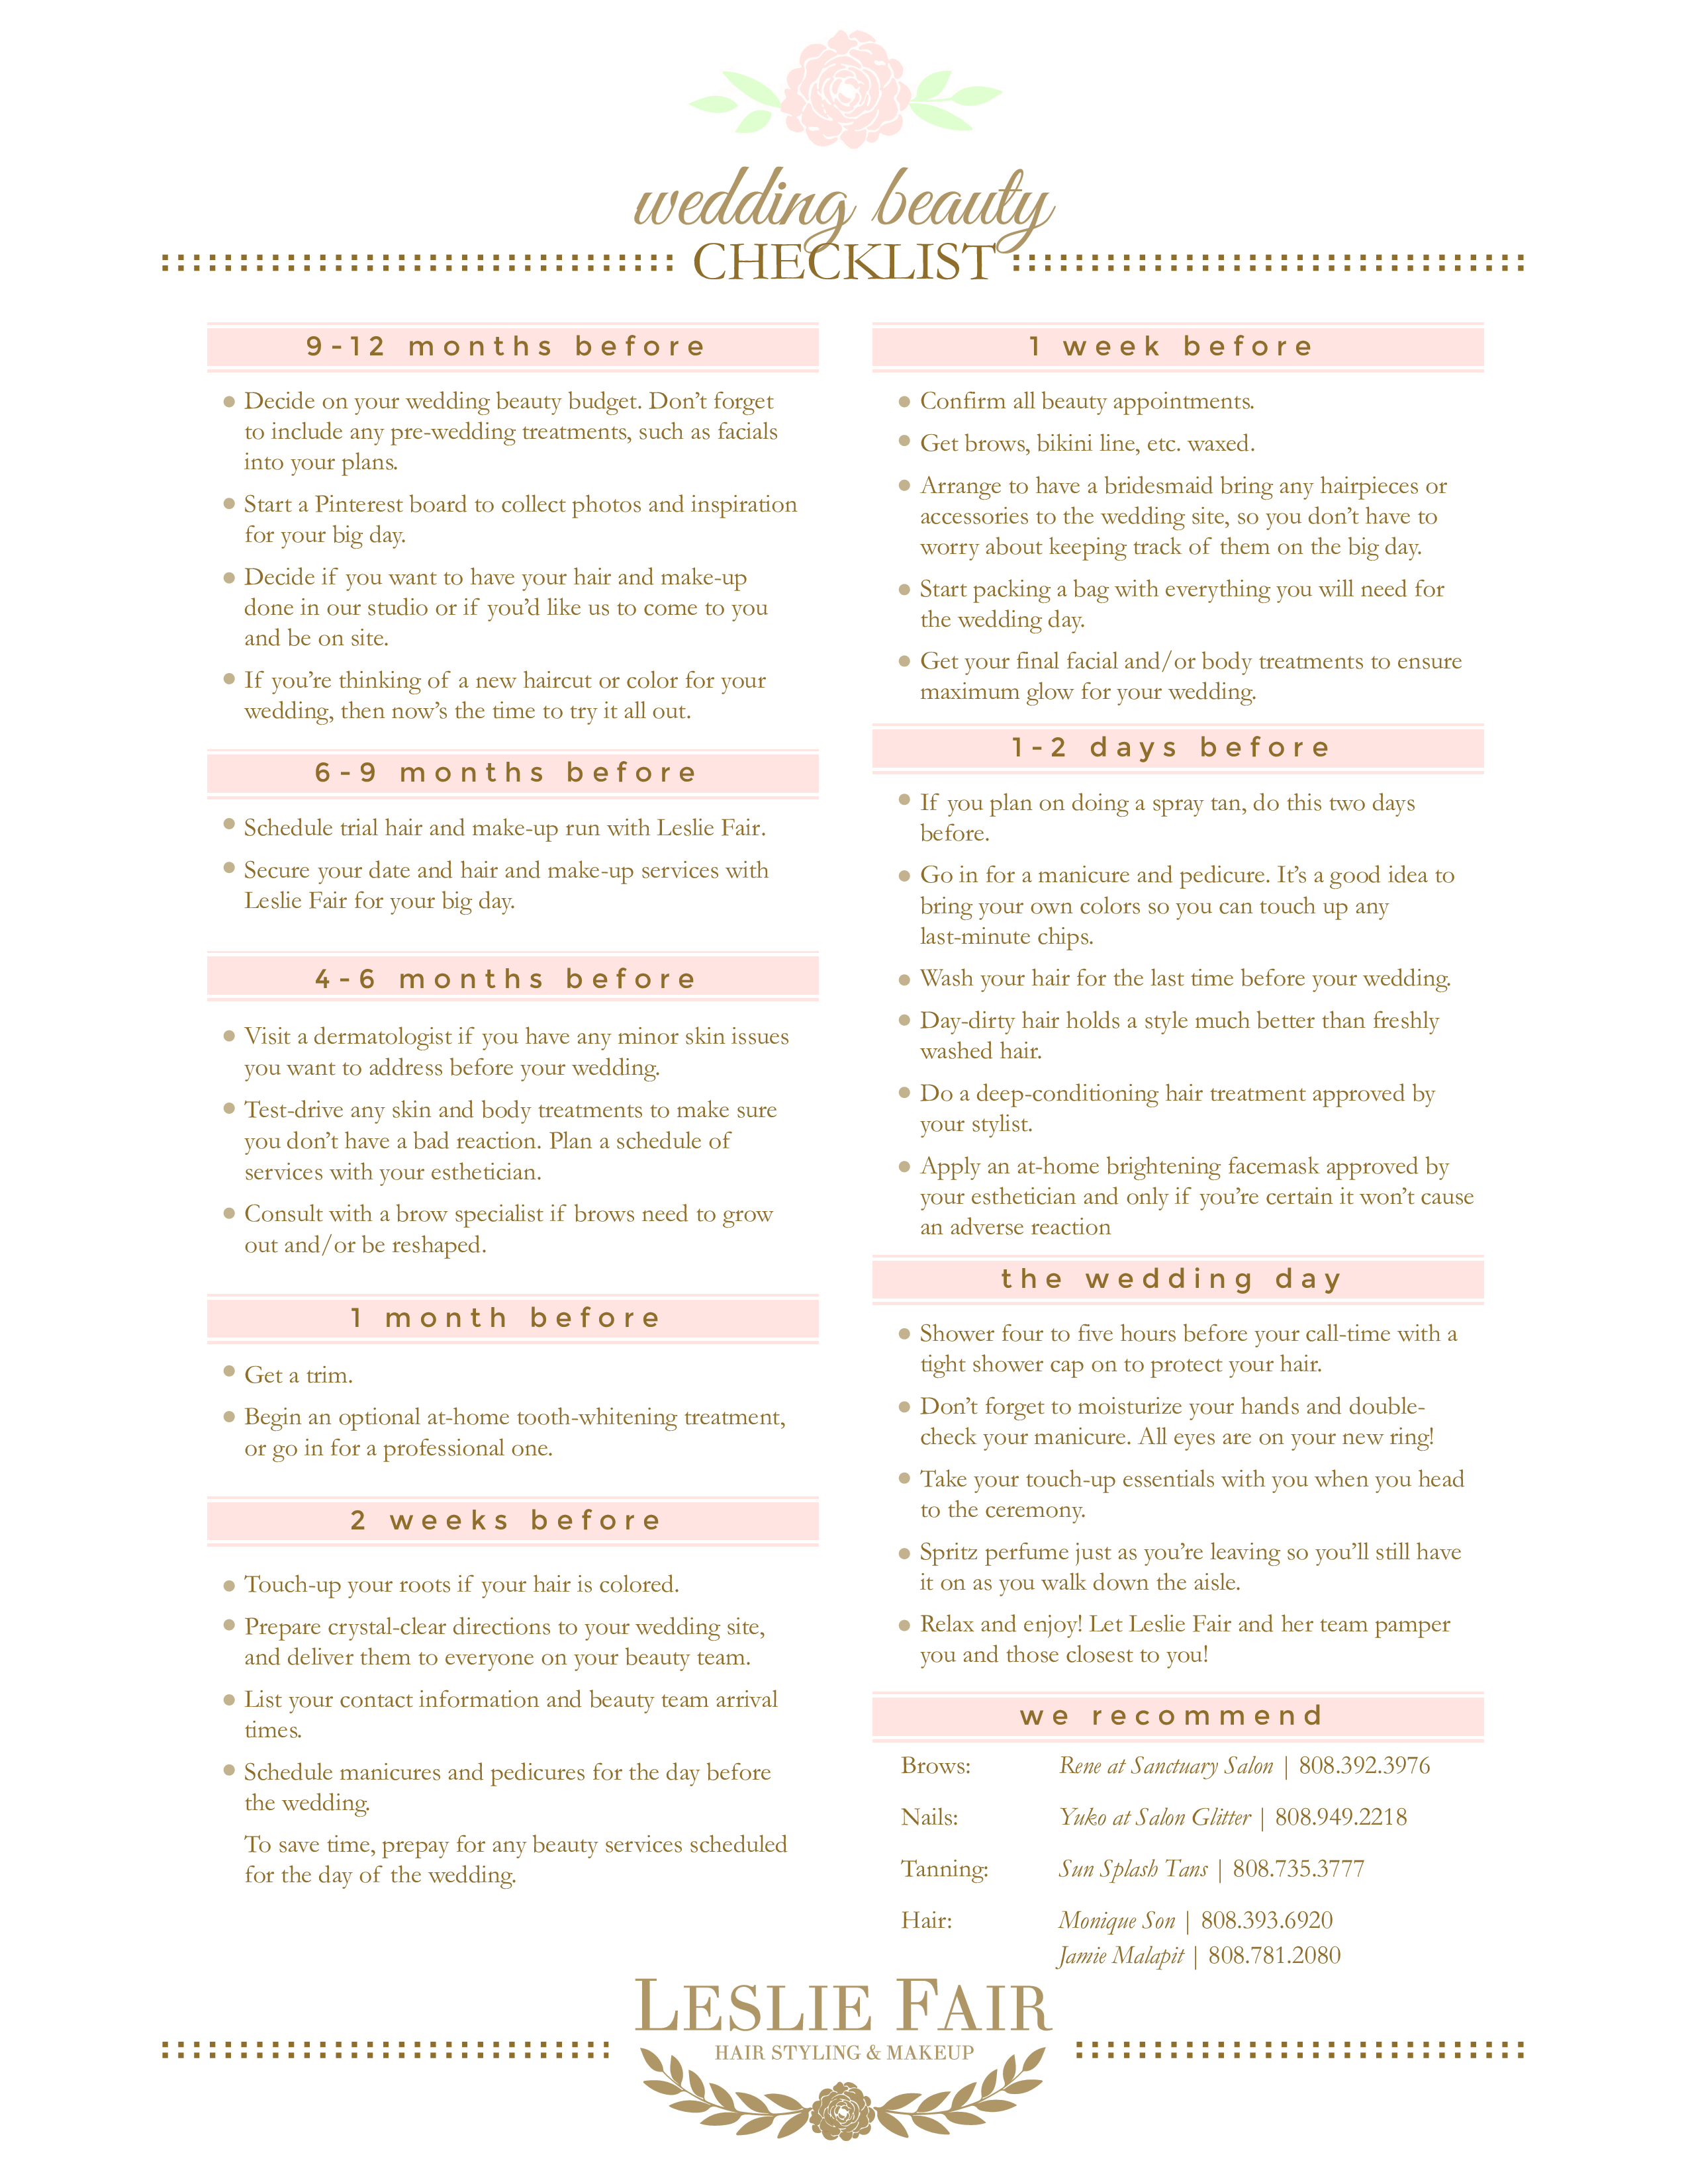 printable wedding beauty checklist plantilla imagen principal